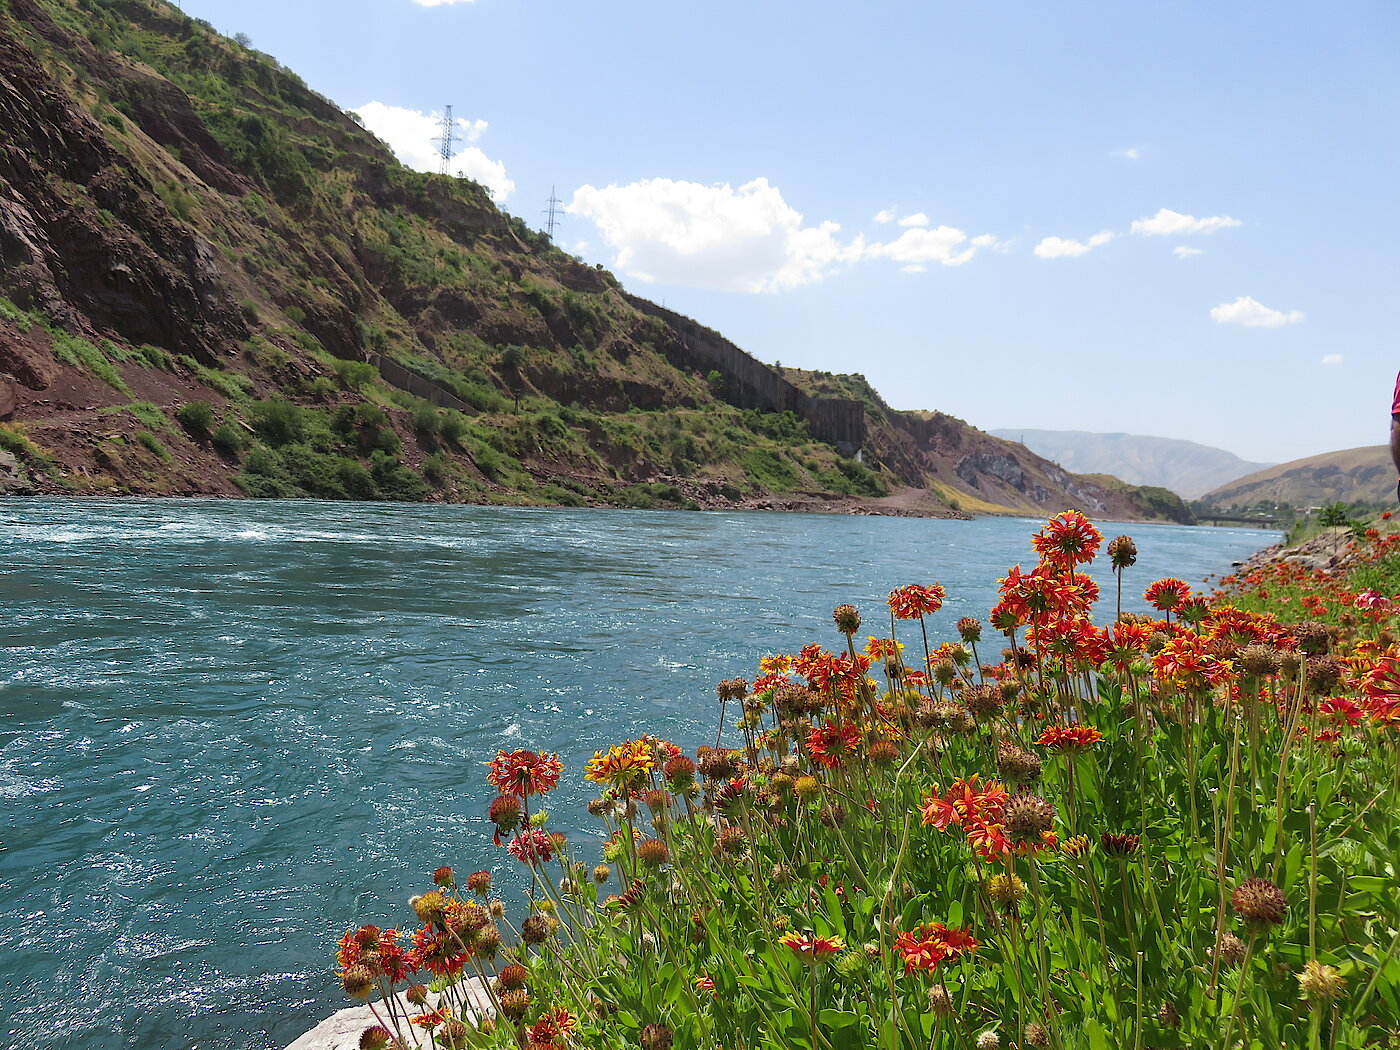 Foto: Blick auf einen Fluss mit Blumen am Ufer und Hügeln.